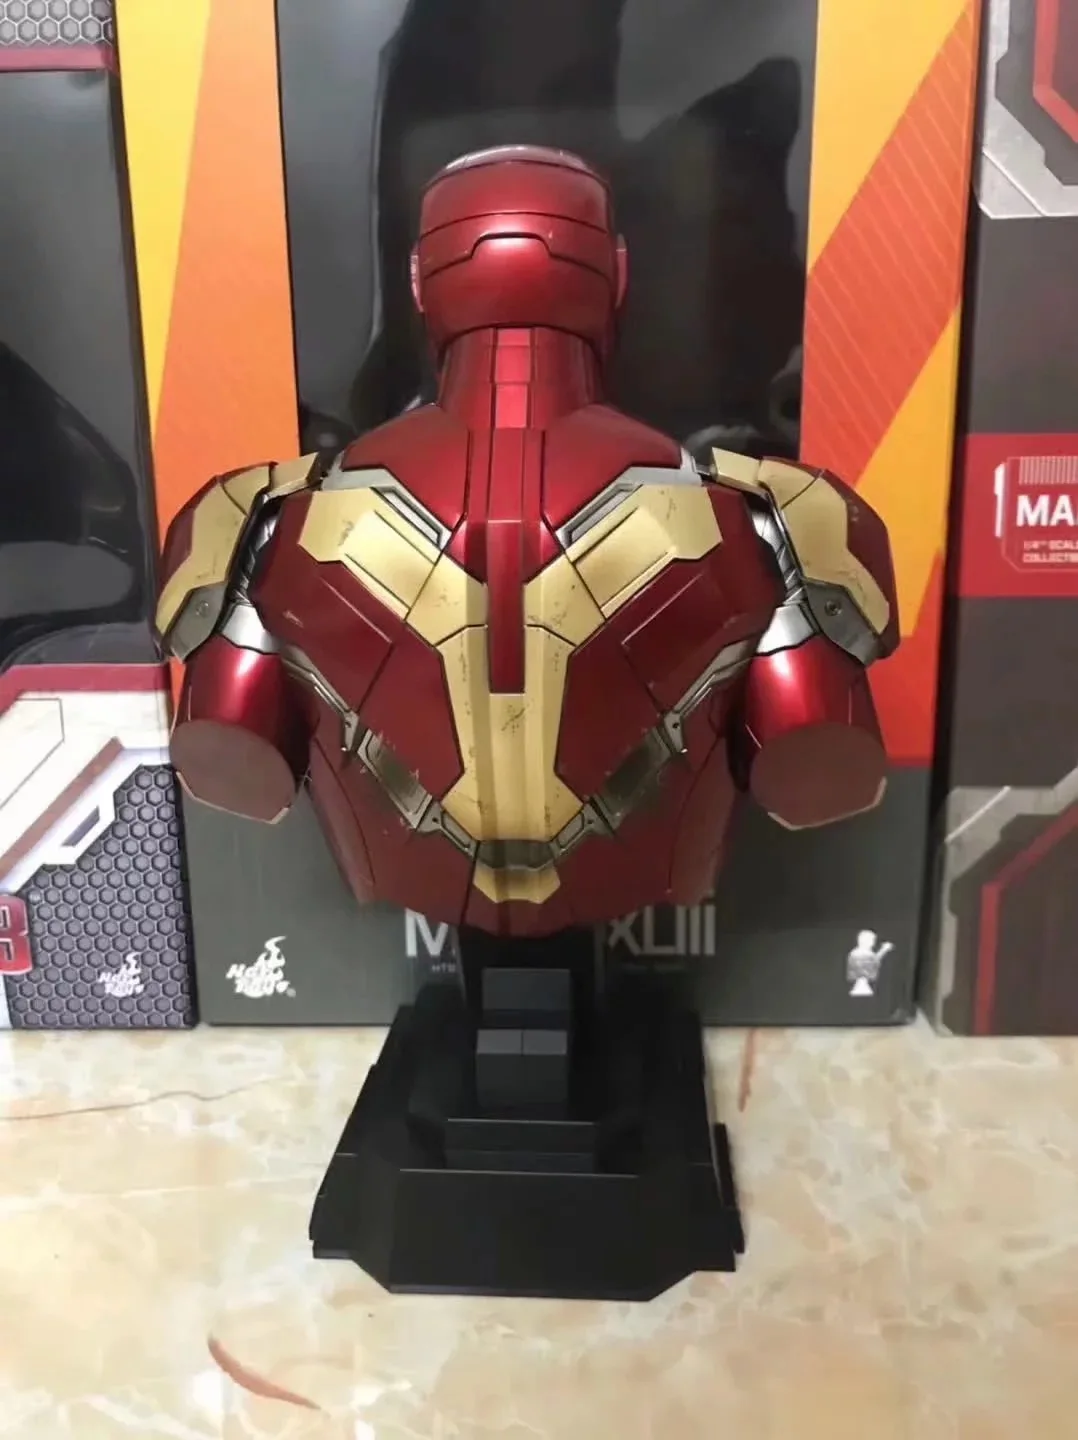 Marvel Железный человек Mark XLIII 43 бюст предварительно окрашенная модель комплект со светодиодный светильник ПВХ фигурка модель игрушки